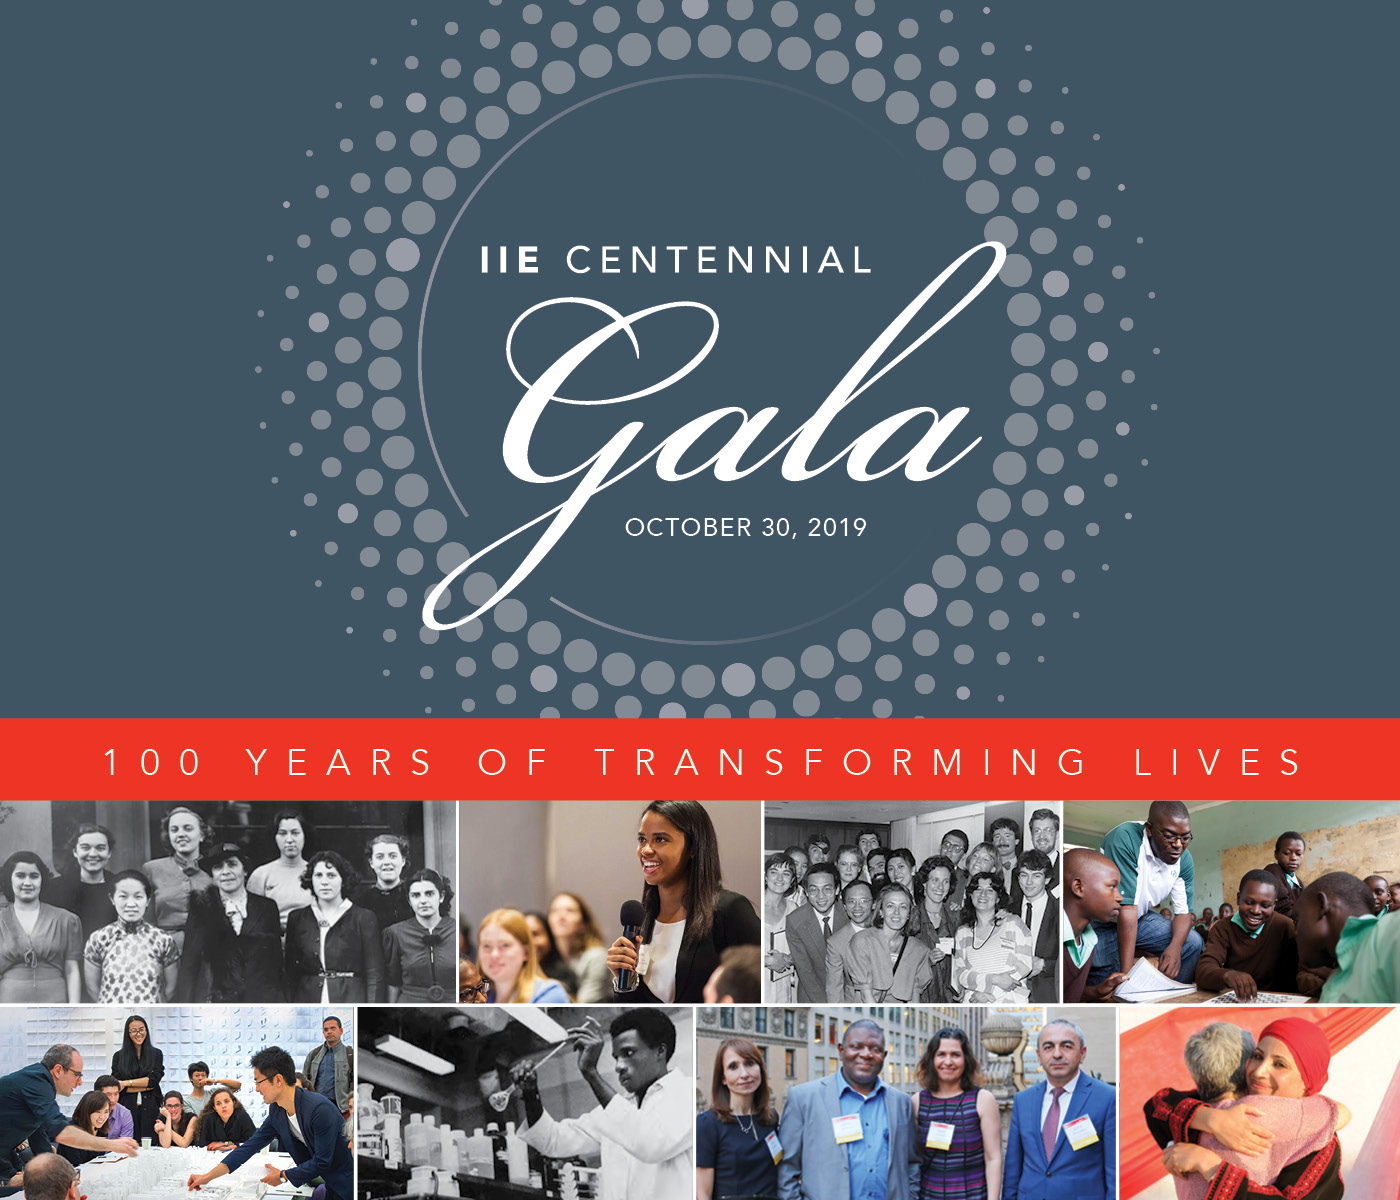 2019 IIE Centennial Gala